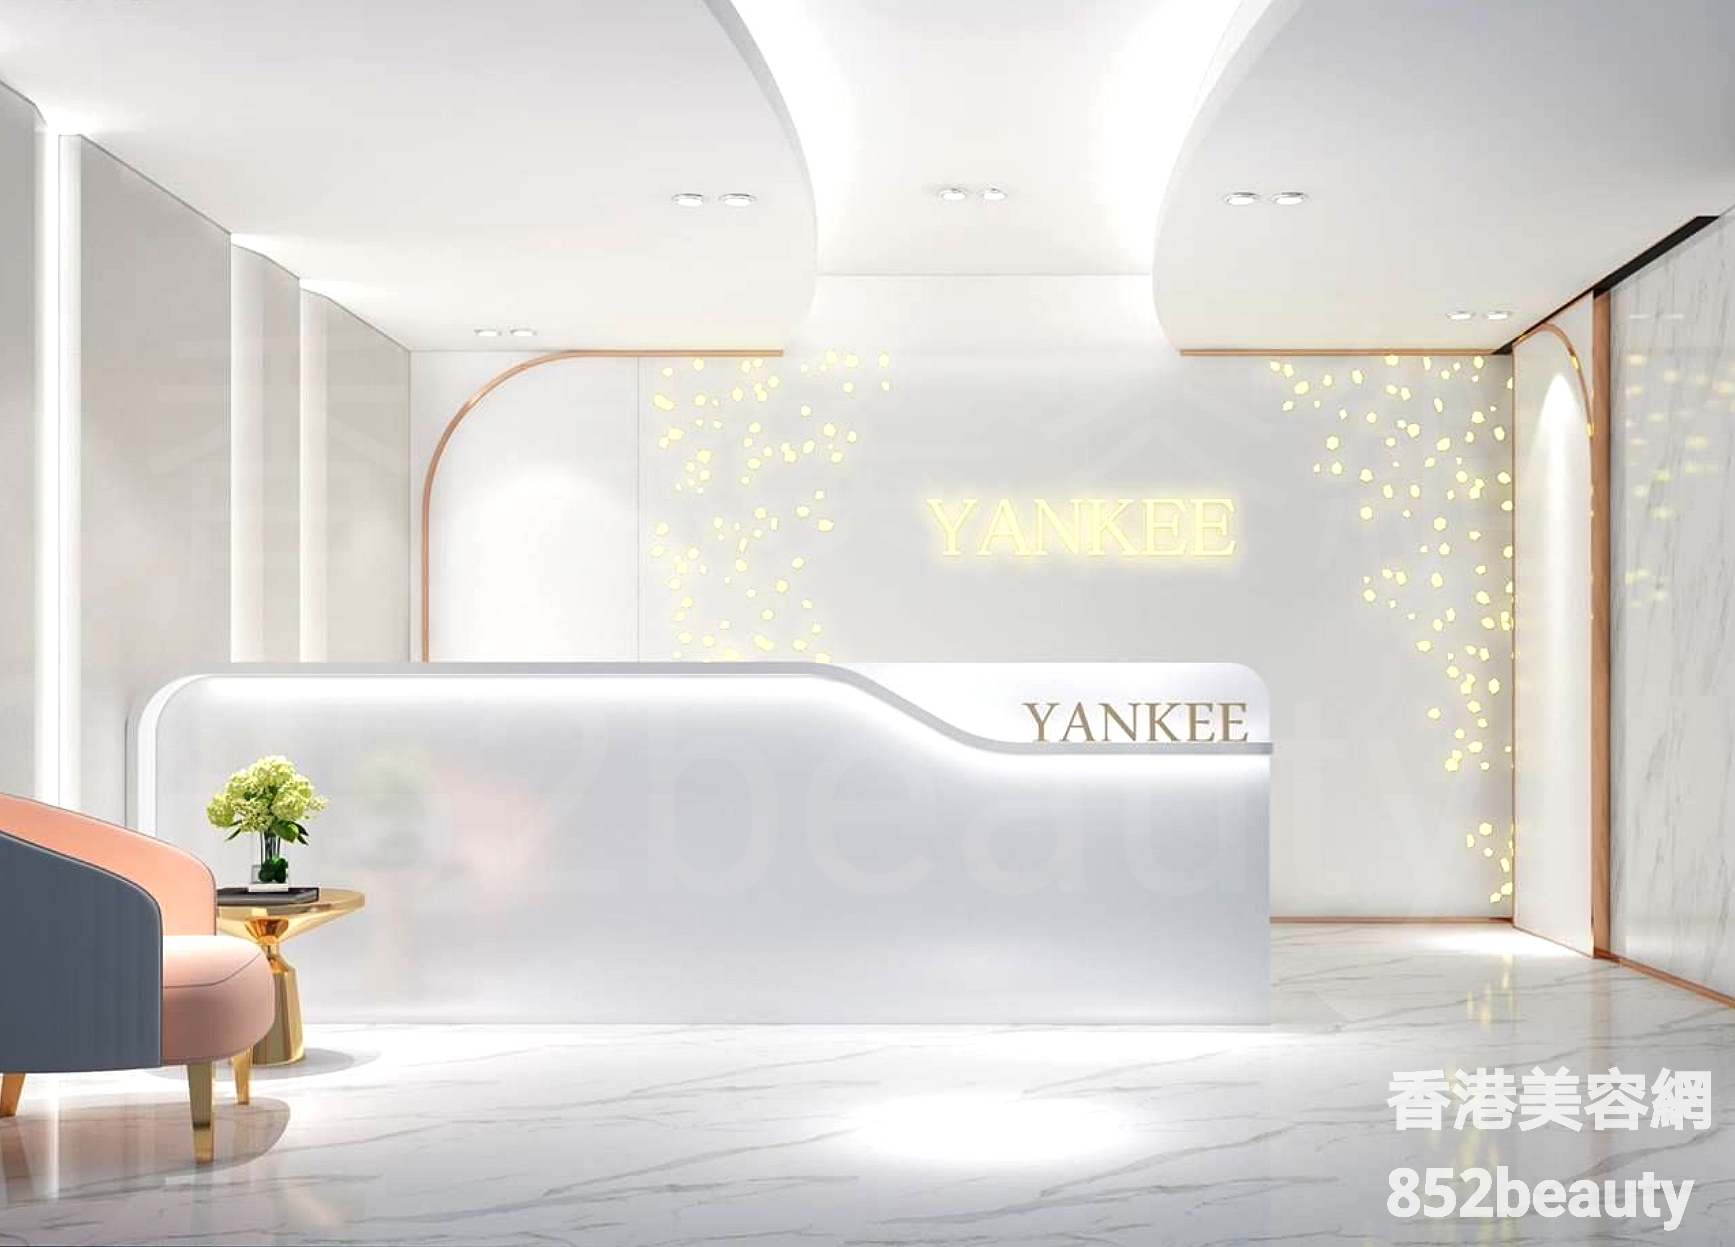 香港美容網 Hong Kong Beauty Salon 美容院 / 美容師: Yankee Beauty 逸姬美容 (尖沙咀醫學部)